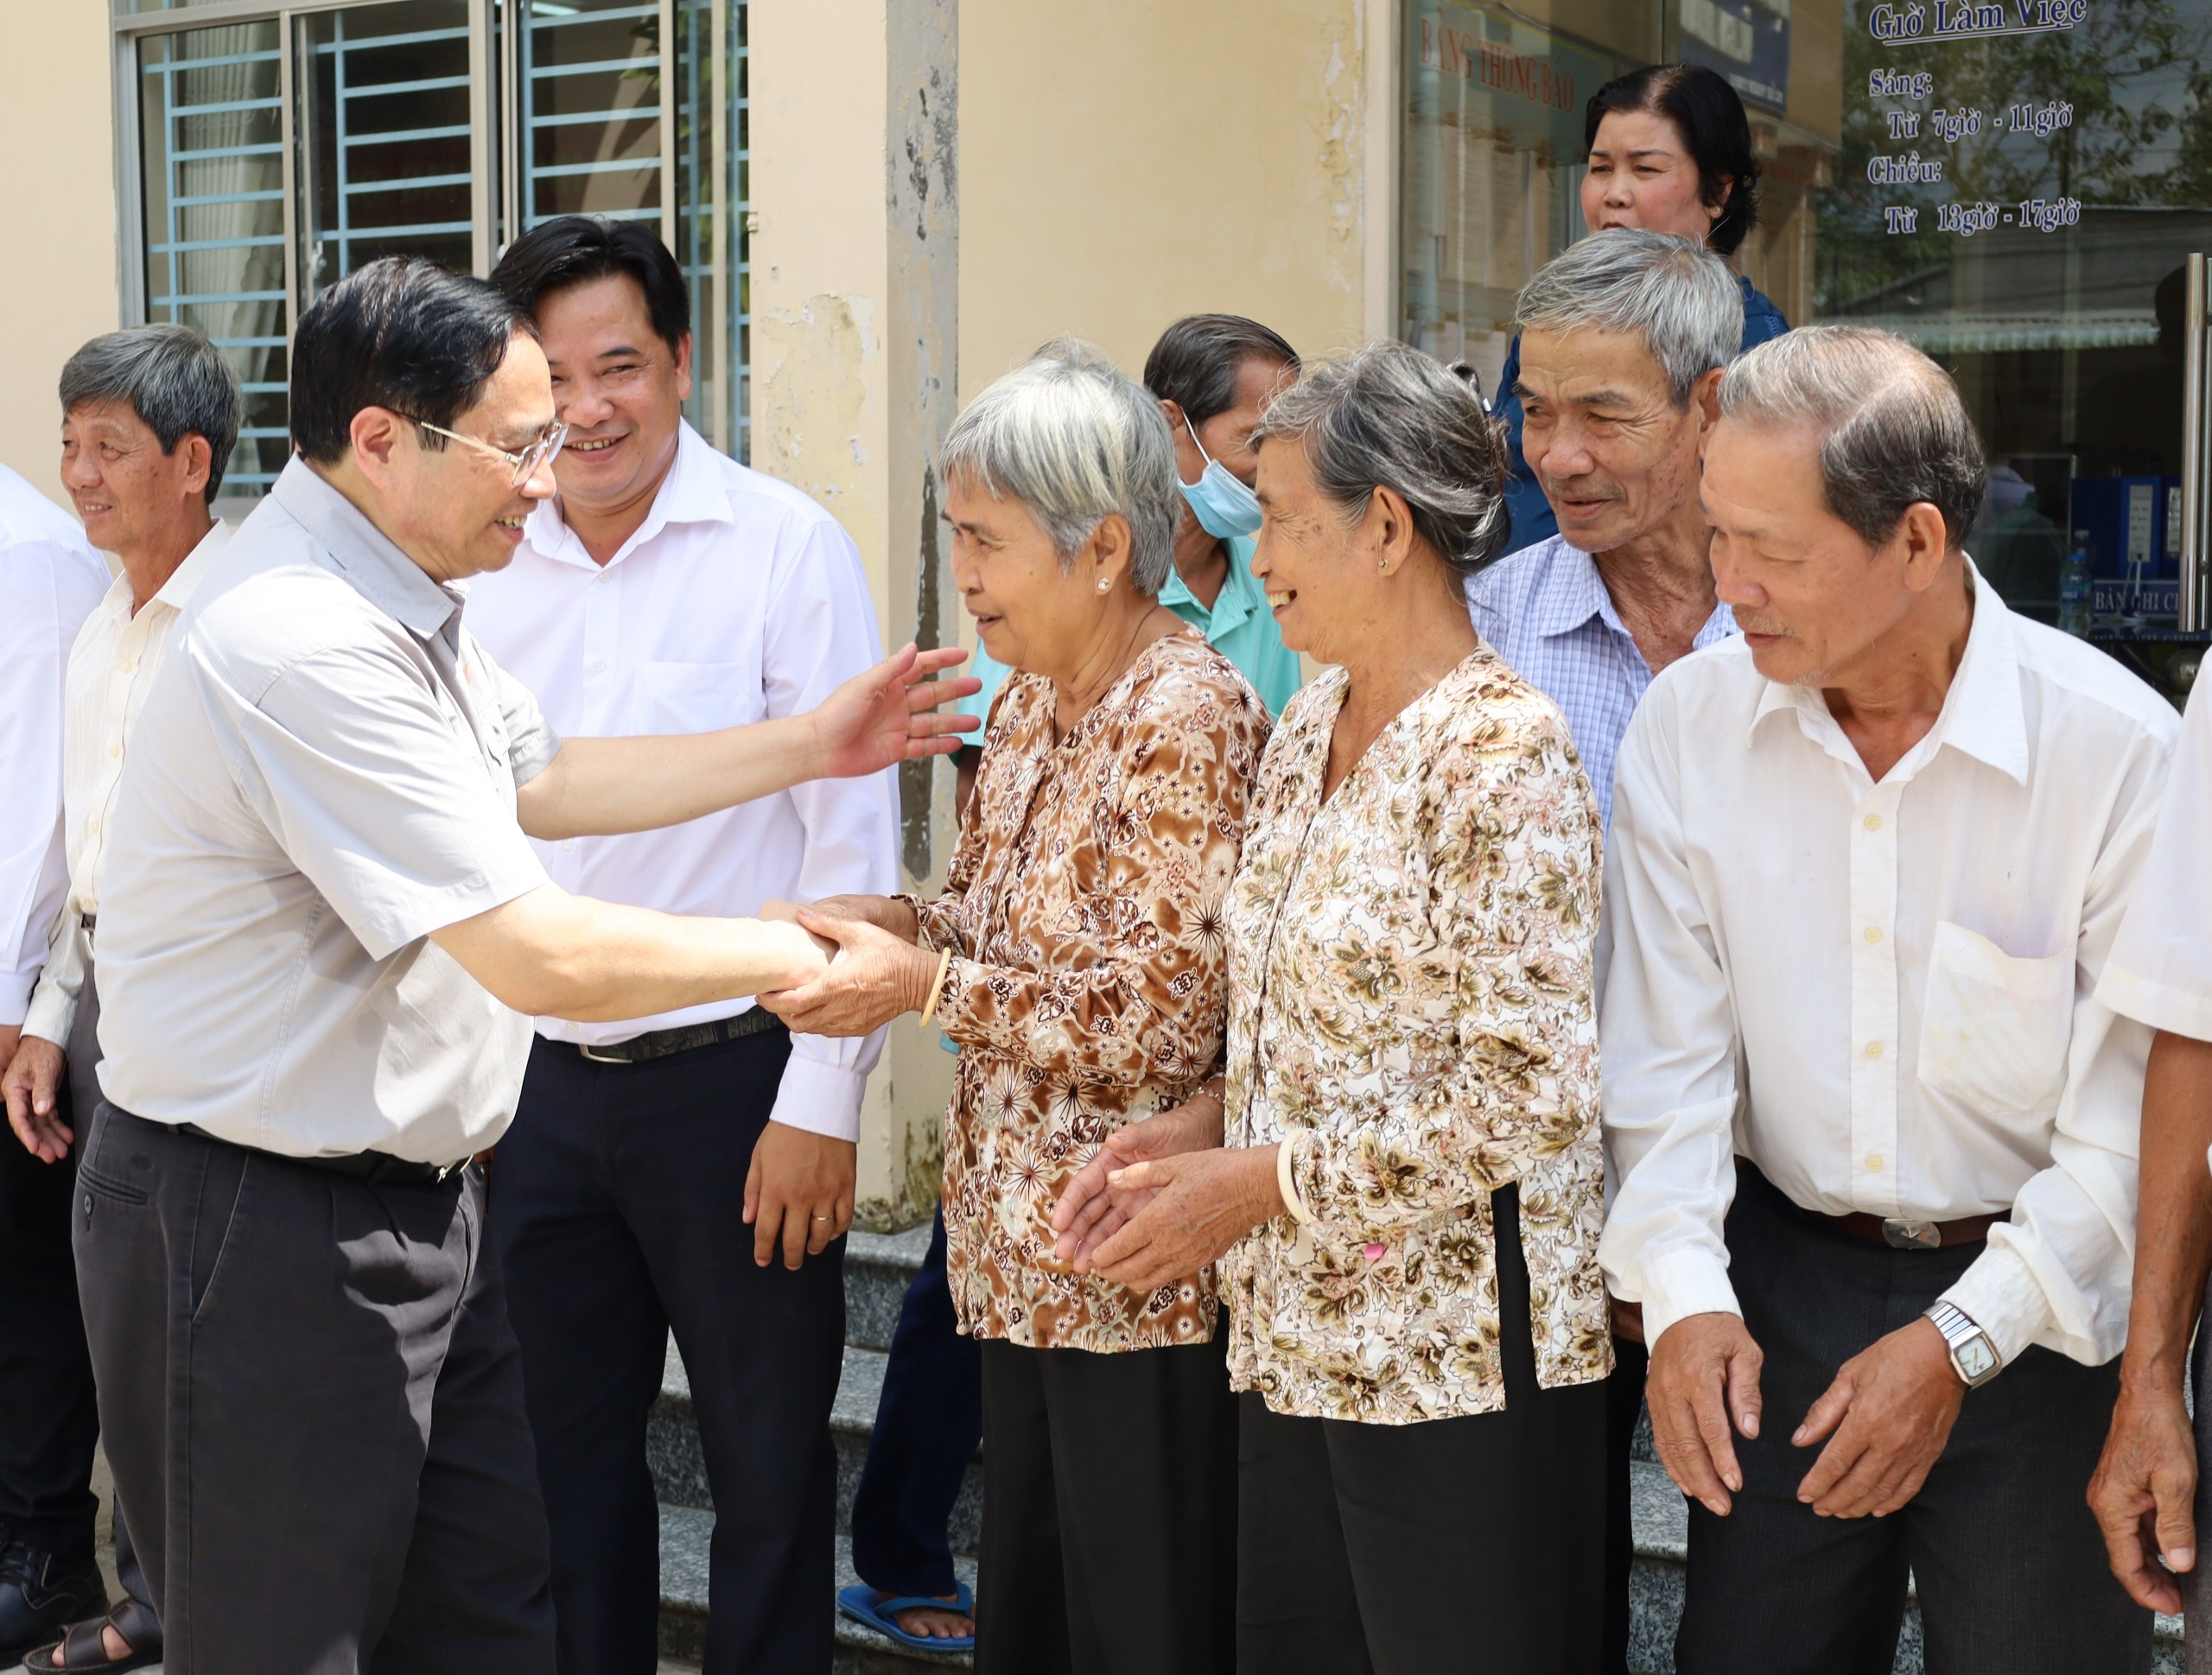 Ông Phạm Minh Chính - Ủy viên Bộ Chính trị, Thủ tướng Chính phủ trò chuyện, thăm hỏi người dân xã Nhơn Ái.